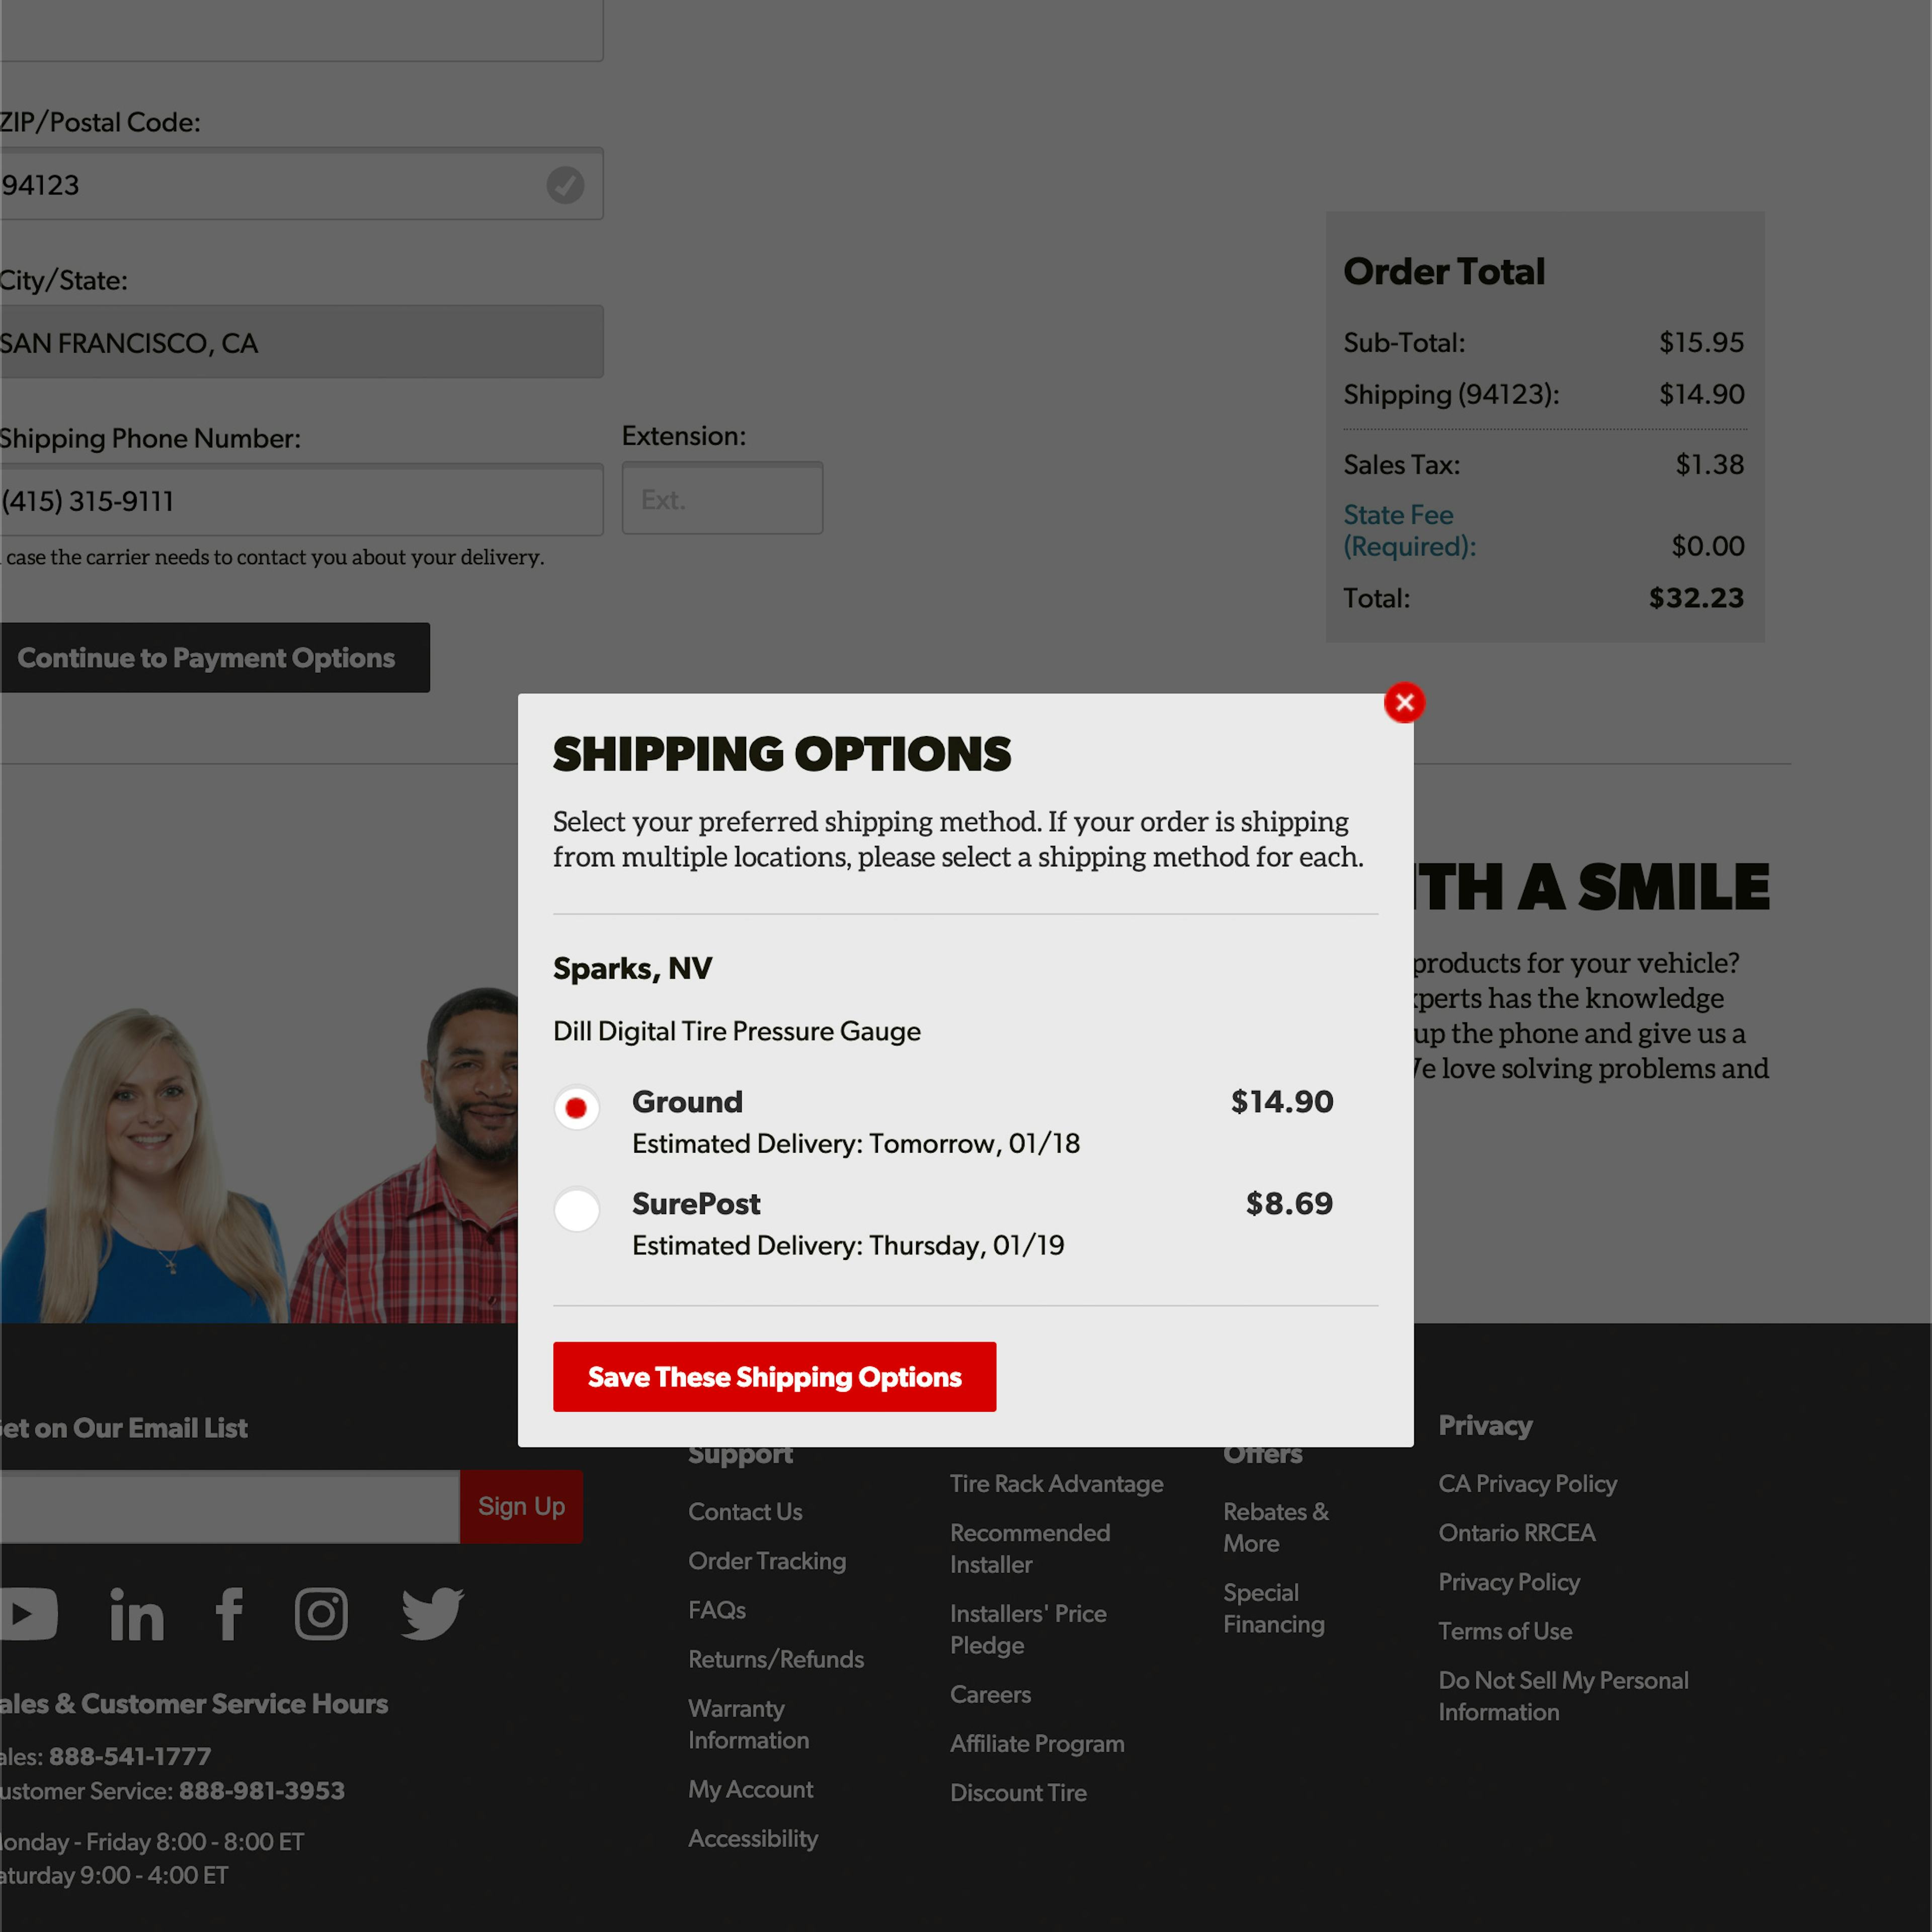 Desktop screenshot of TireRack.com